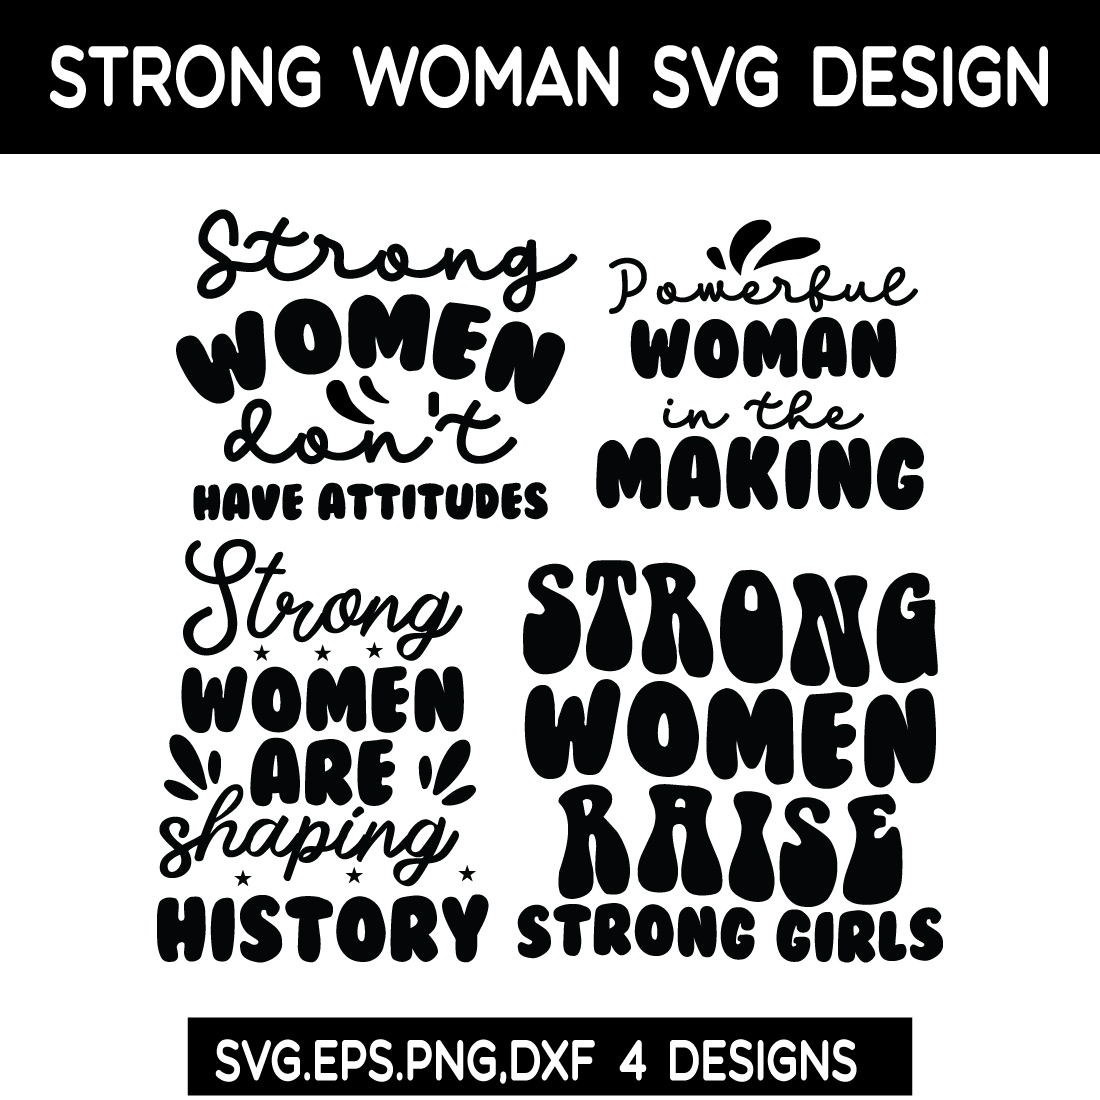 woman SVG bundle preview image.